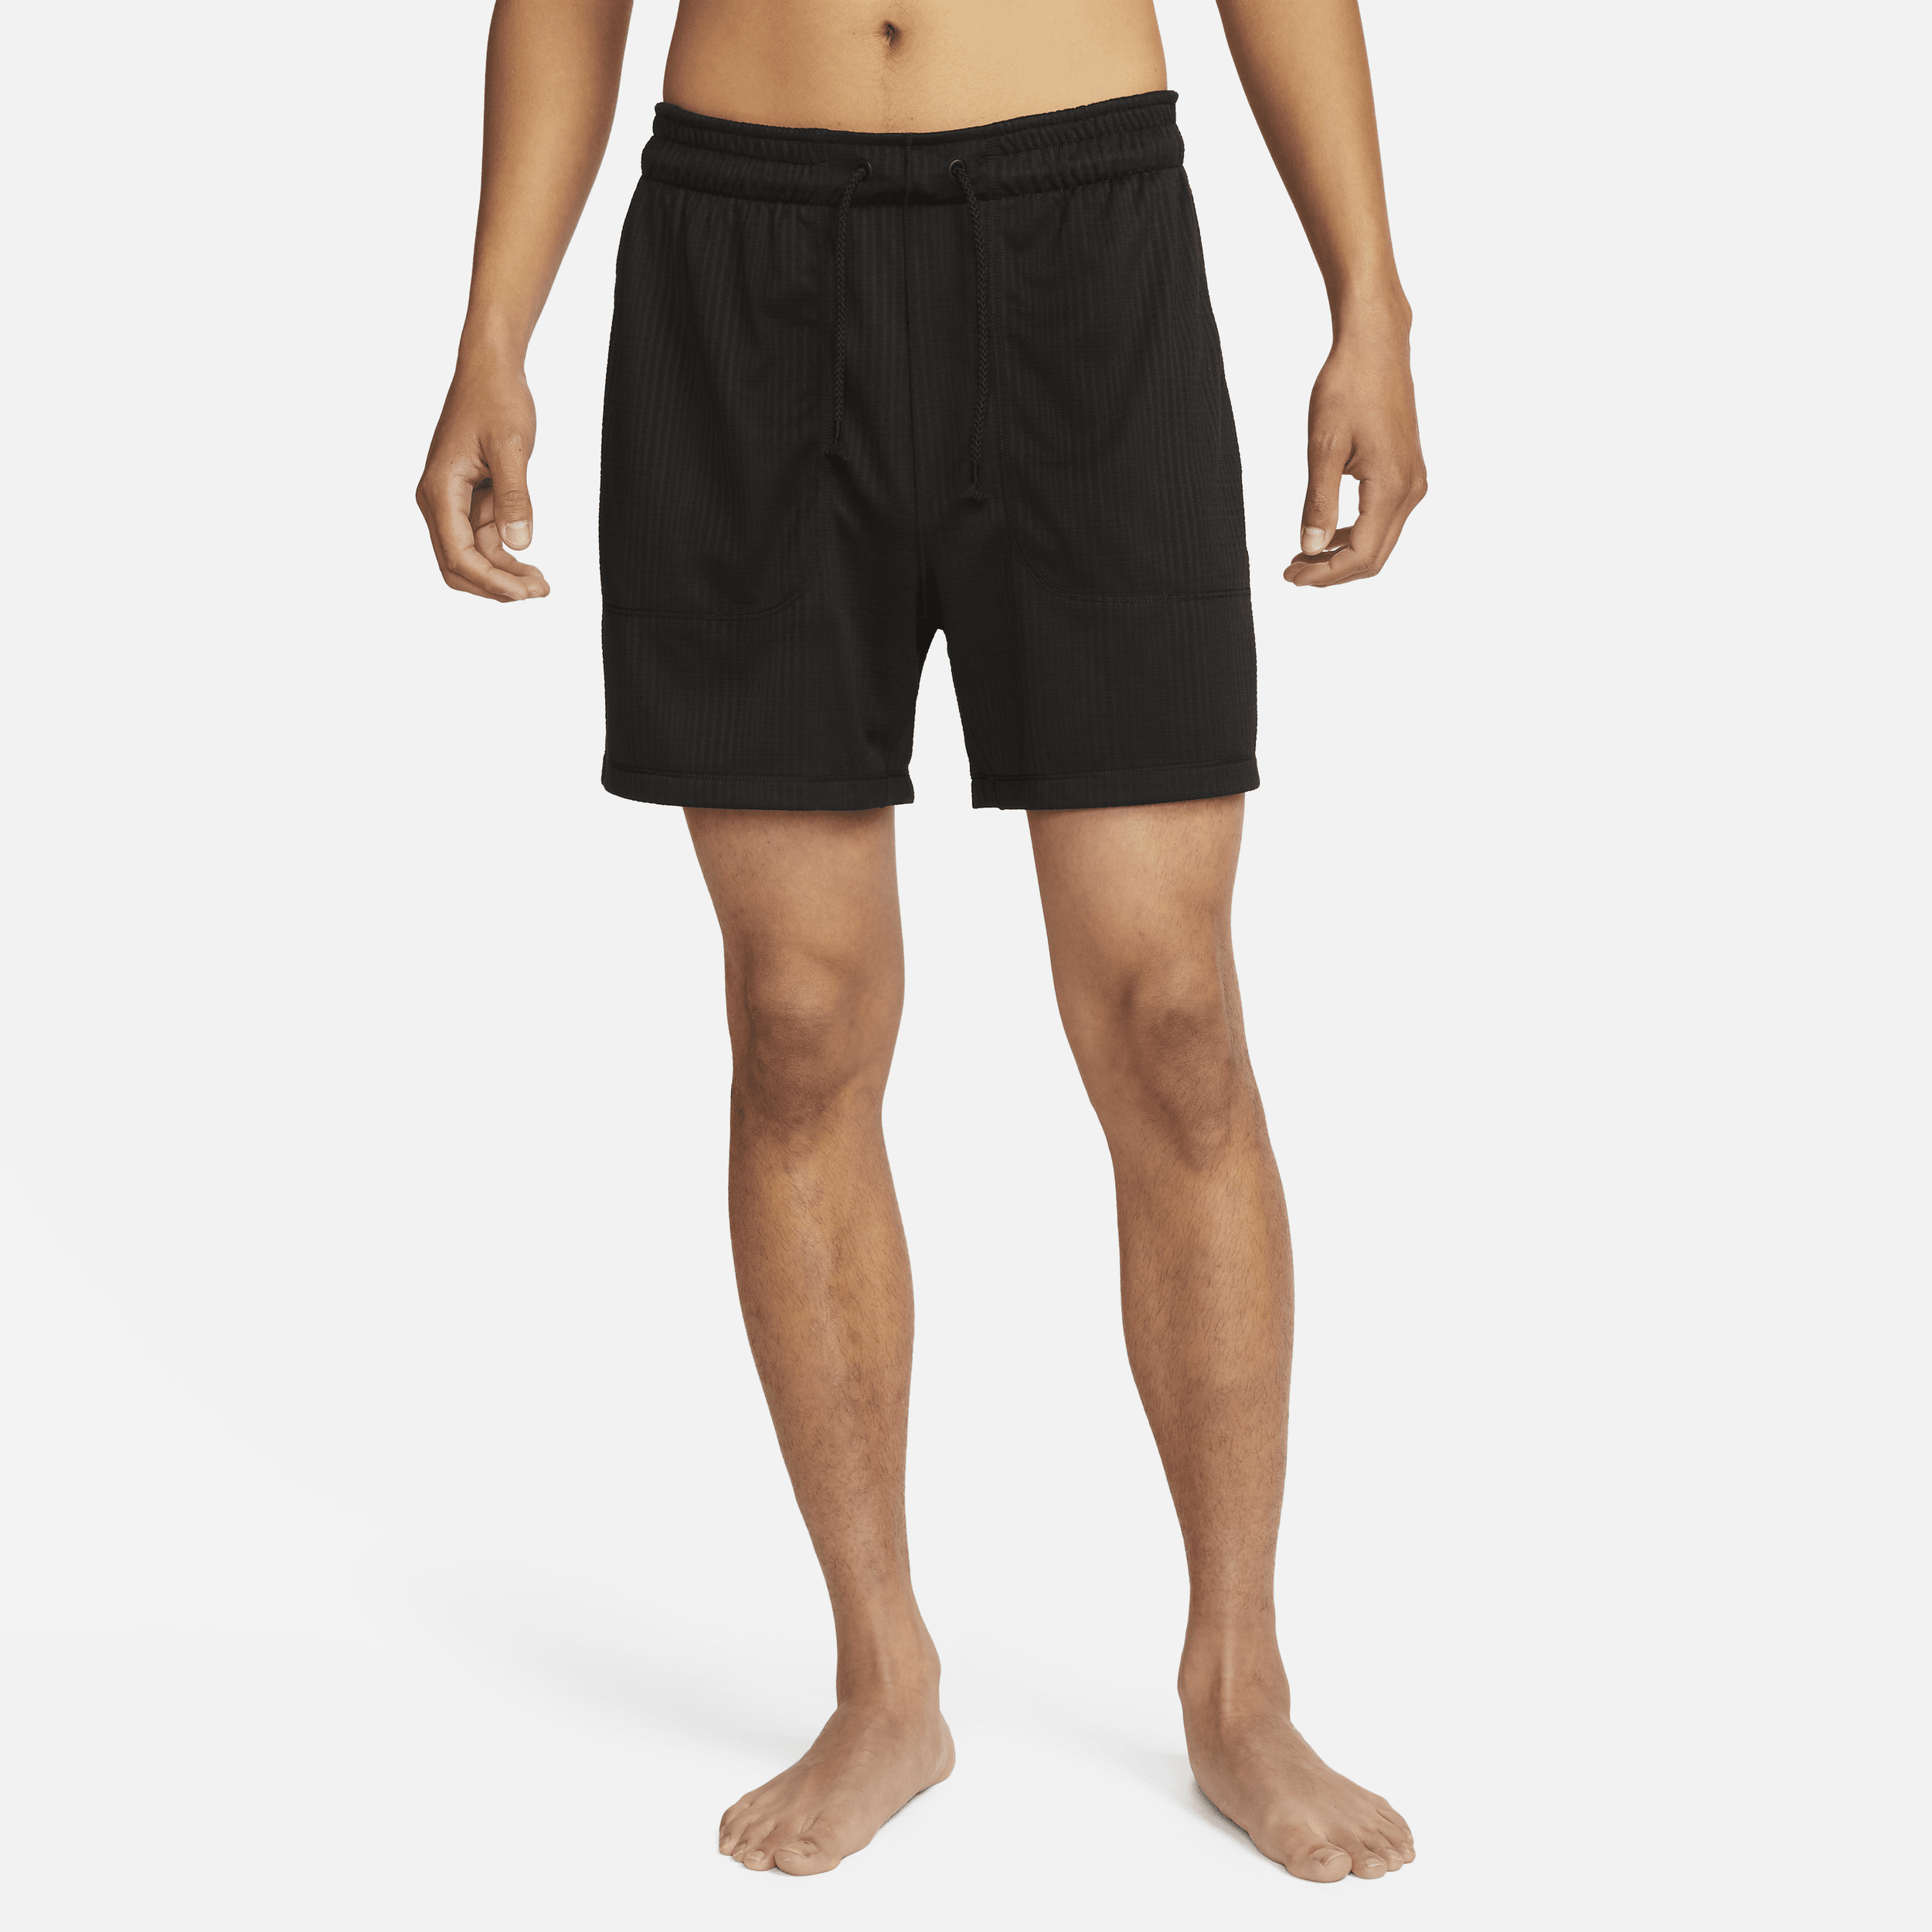 Shorts Dri-FIT non foderati 13 cm Nike Yoga – Uomo - Nero